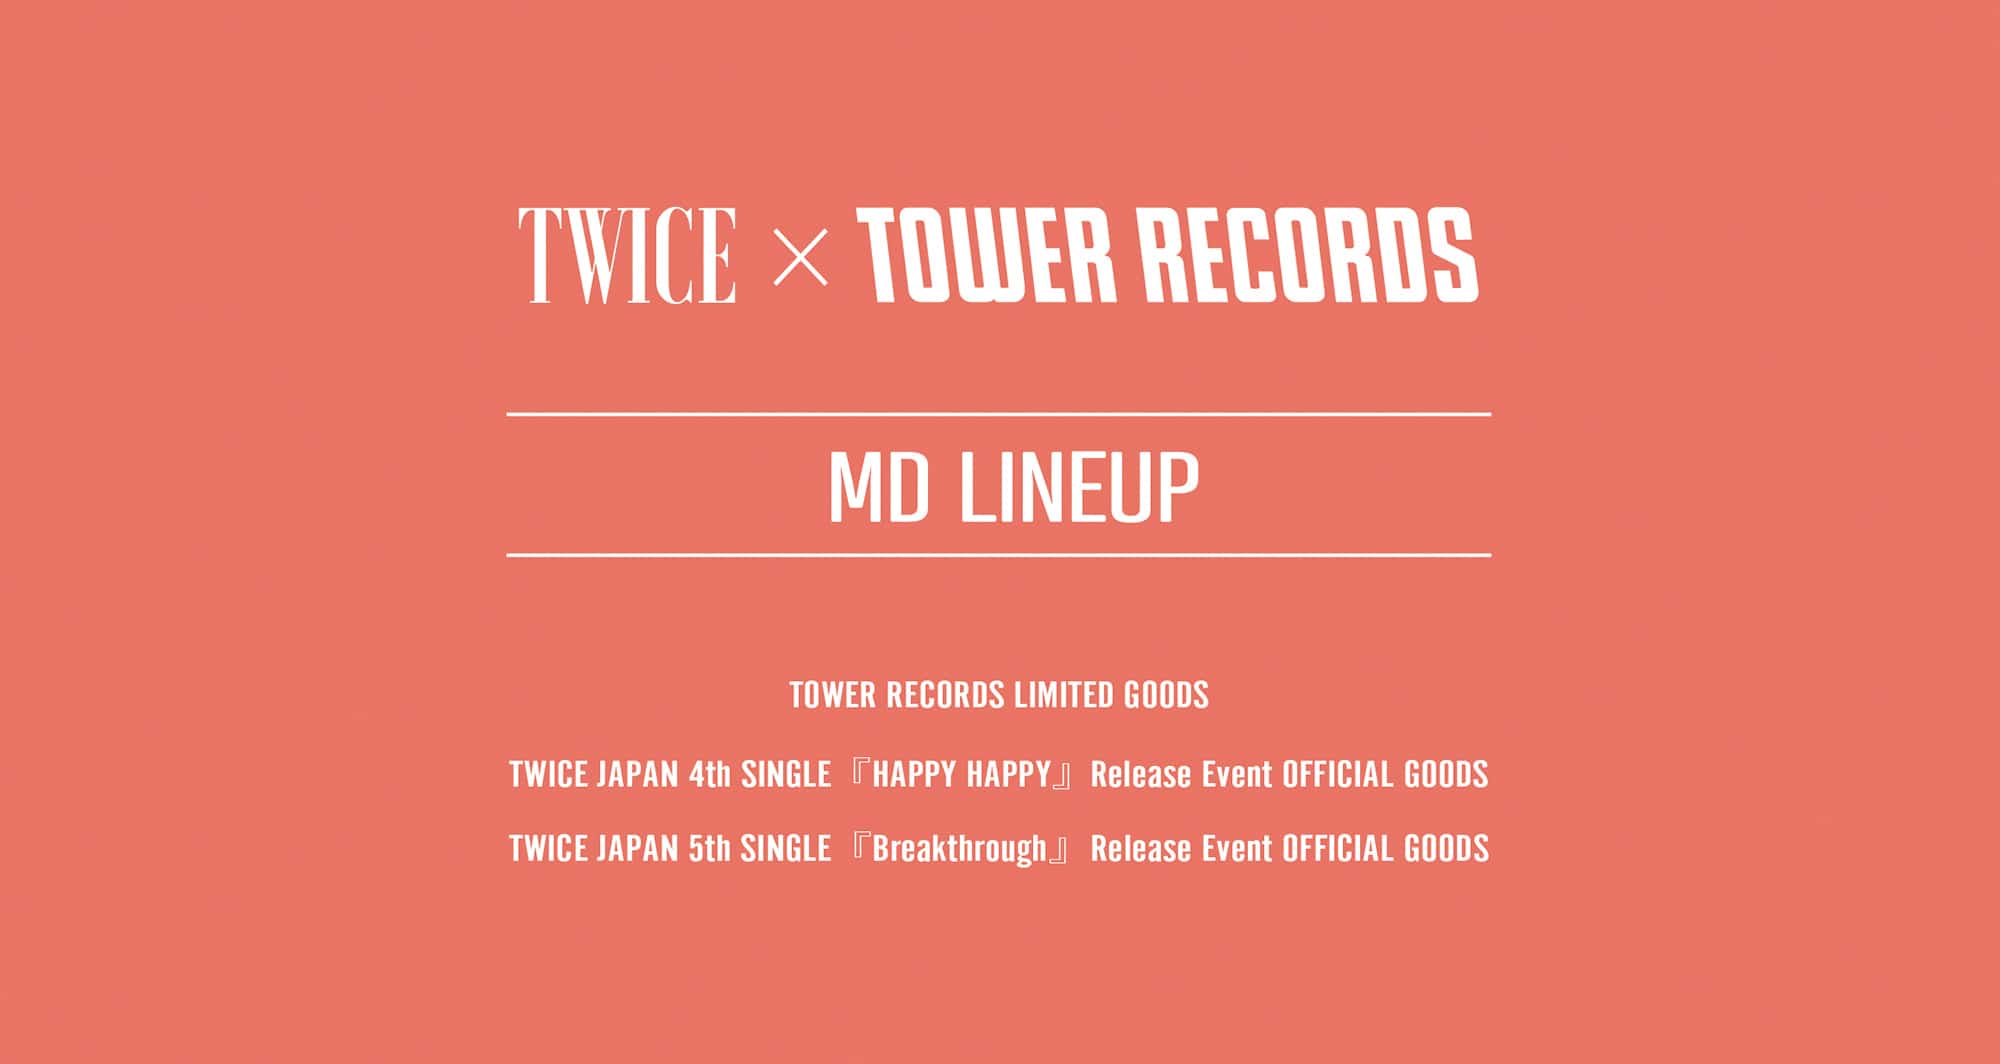 TWICE × タワーレコード全国24店舗 12.27-1.13 オフィシャルグッズ販売!